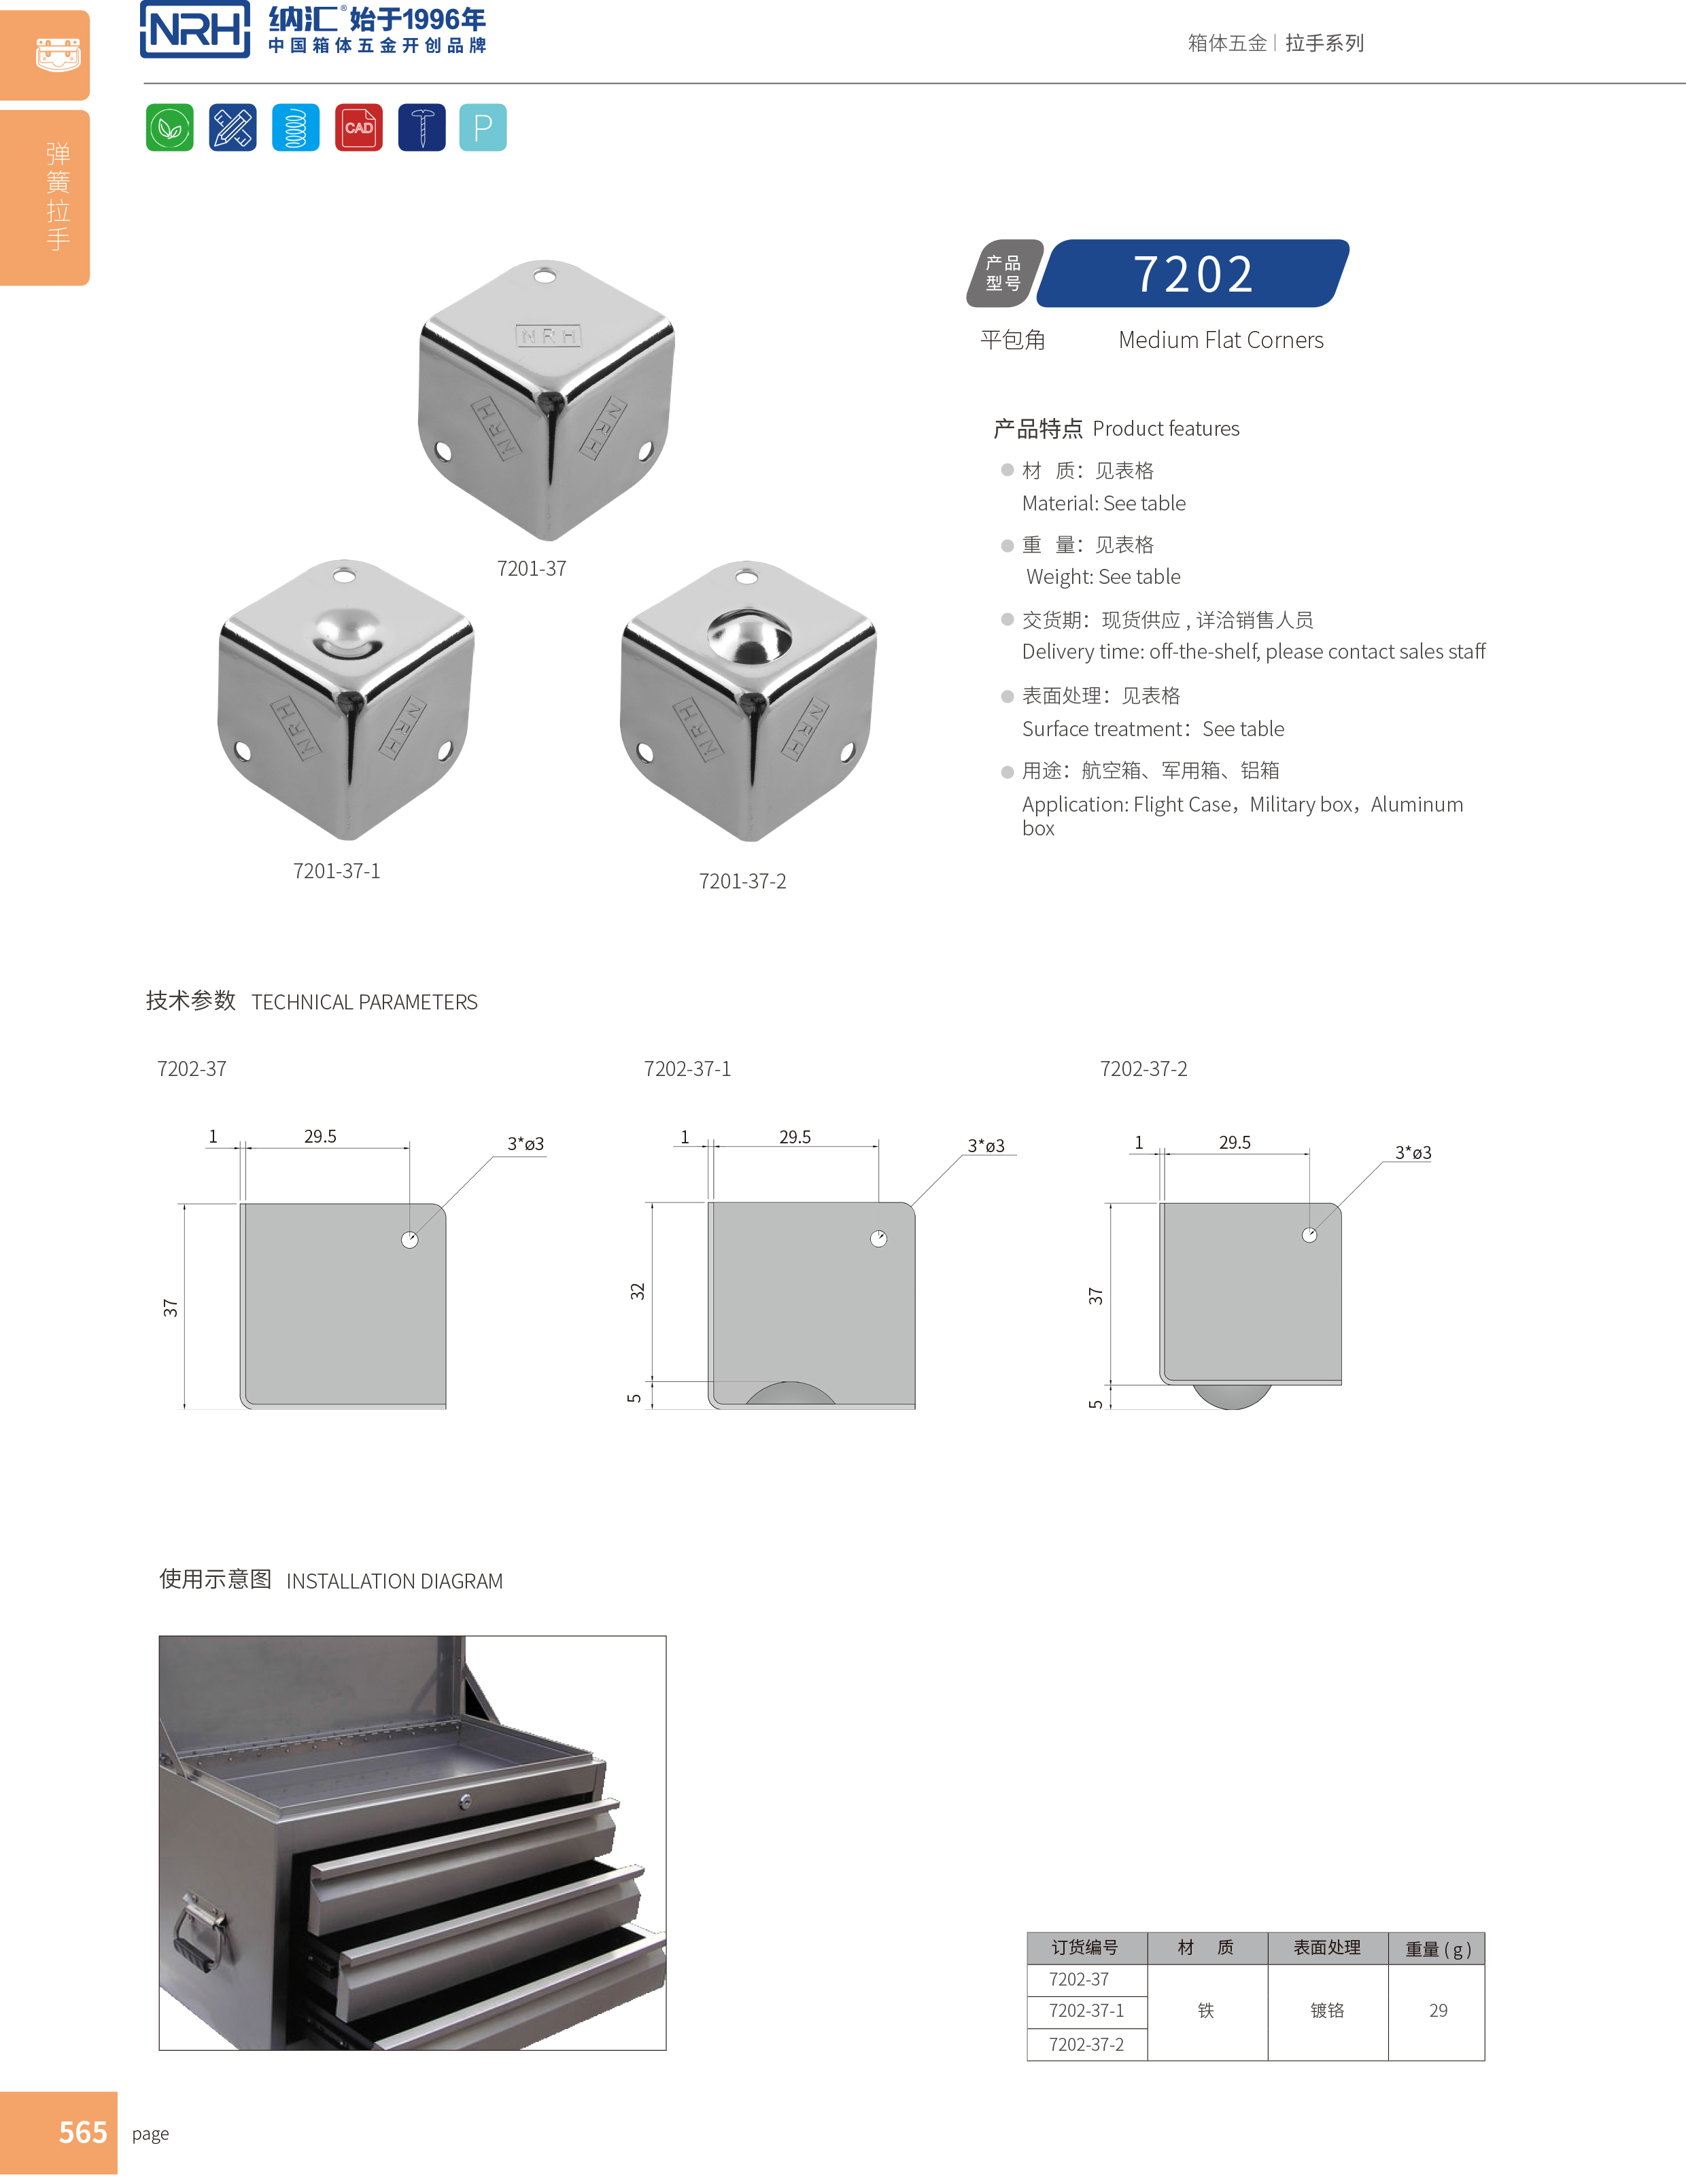 铝箱包角7202-37-1直角三角包角_木箱包角_NRH纳汇铝箱包角